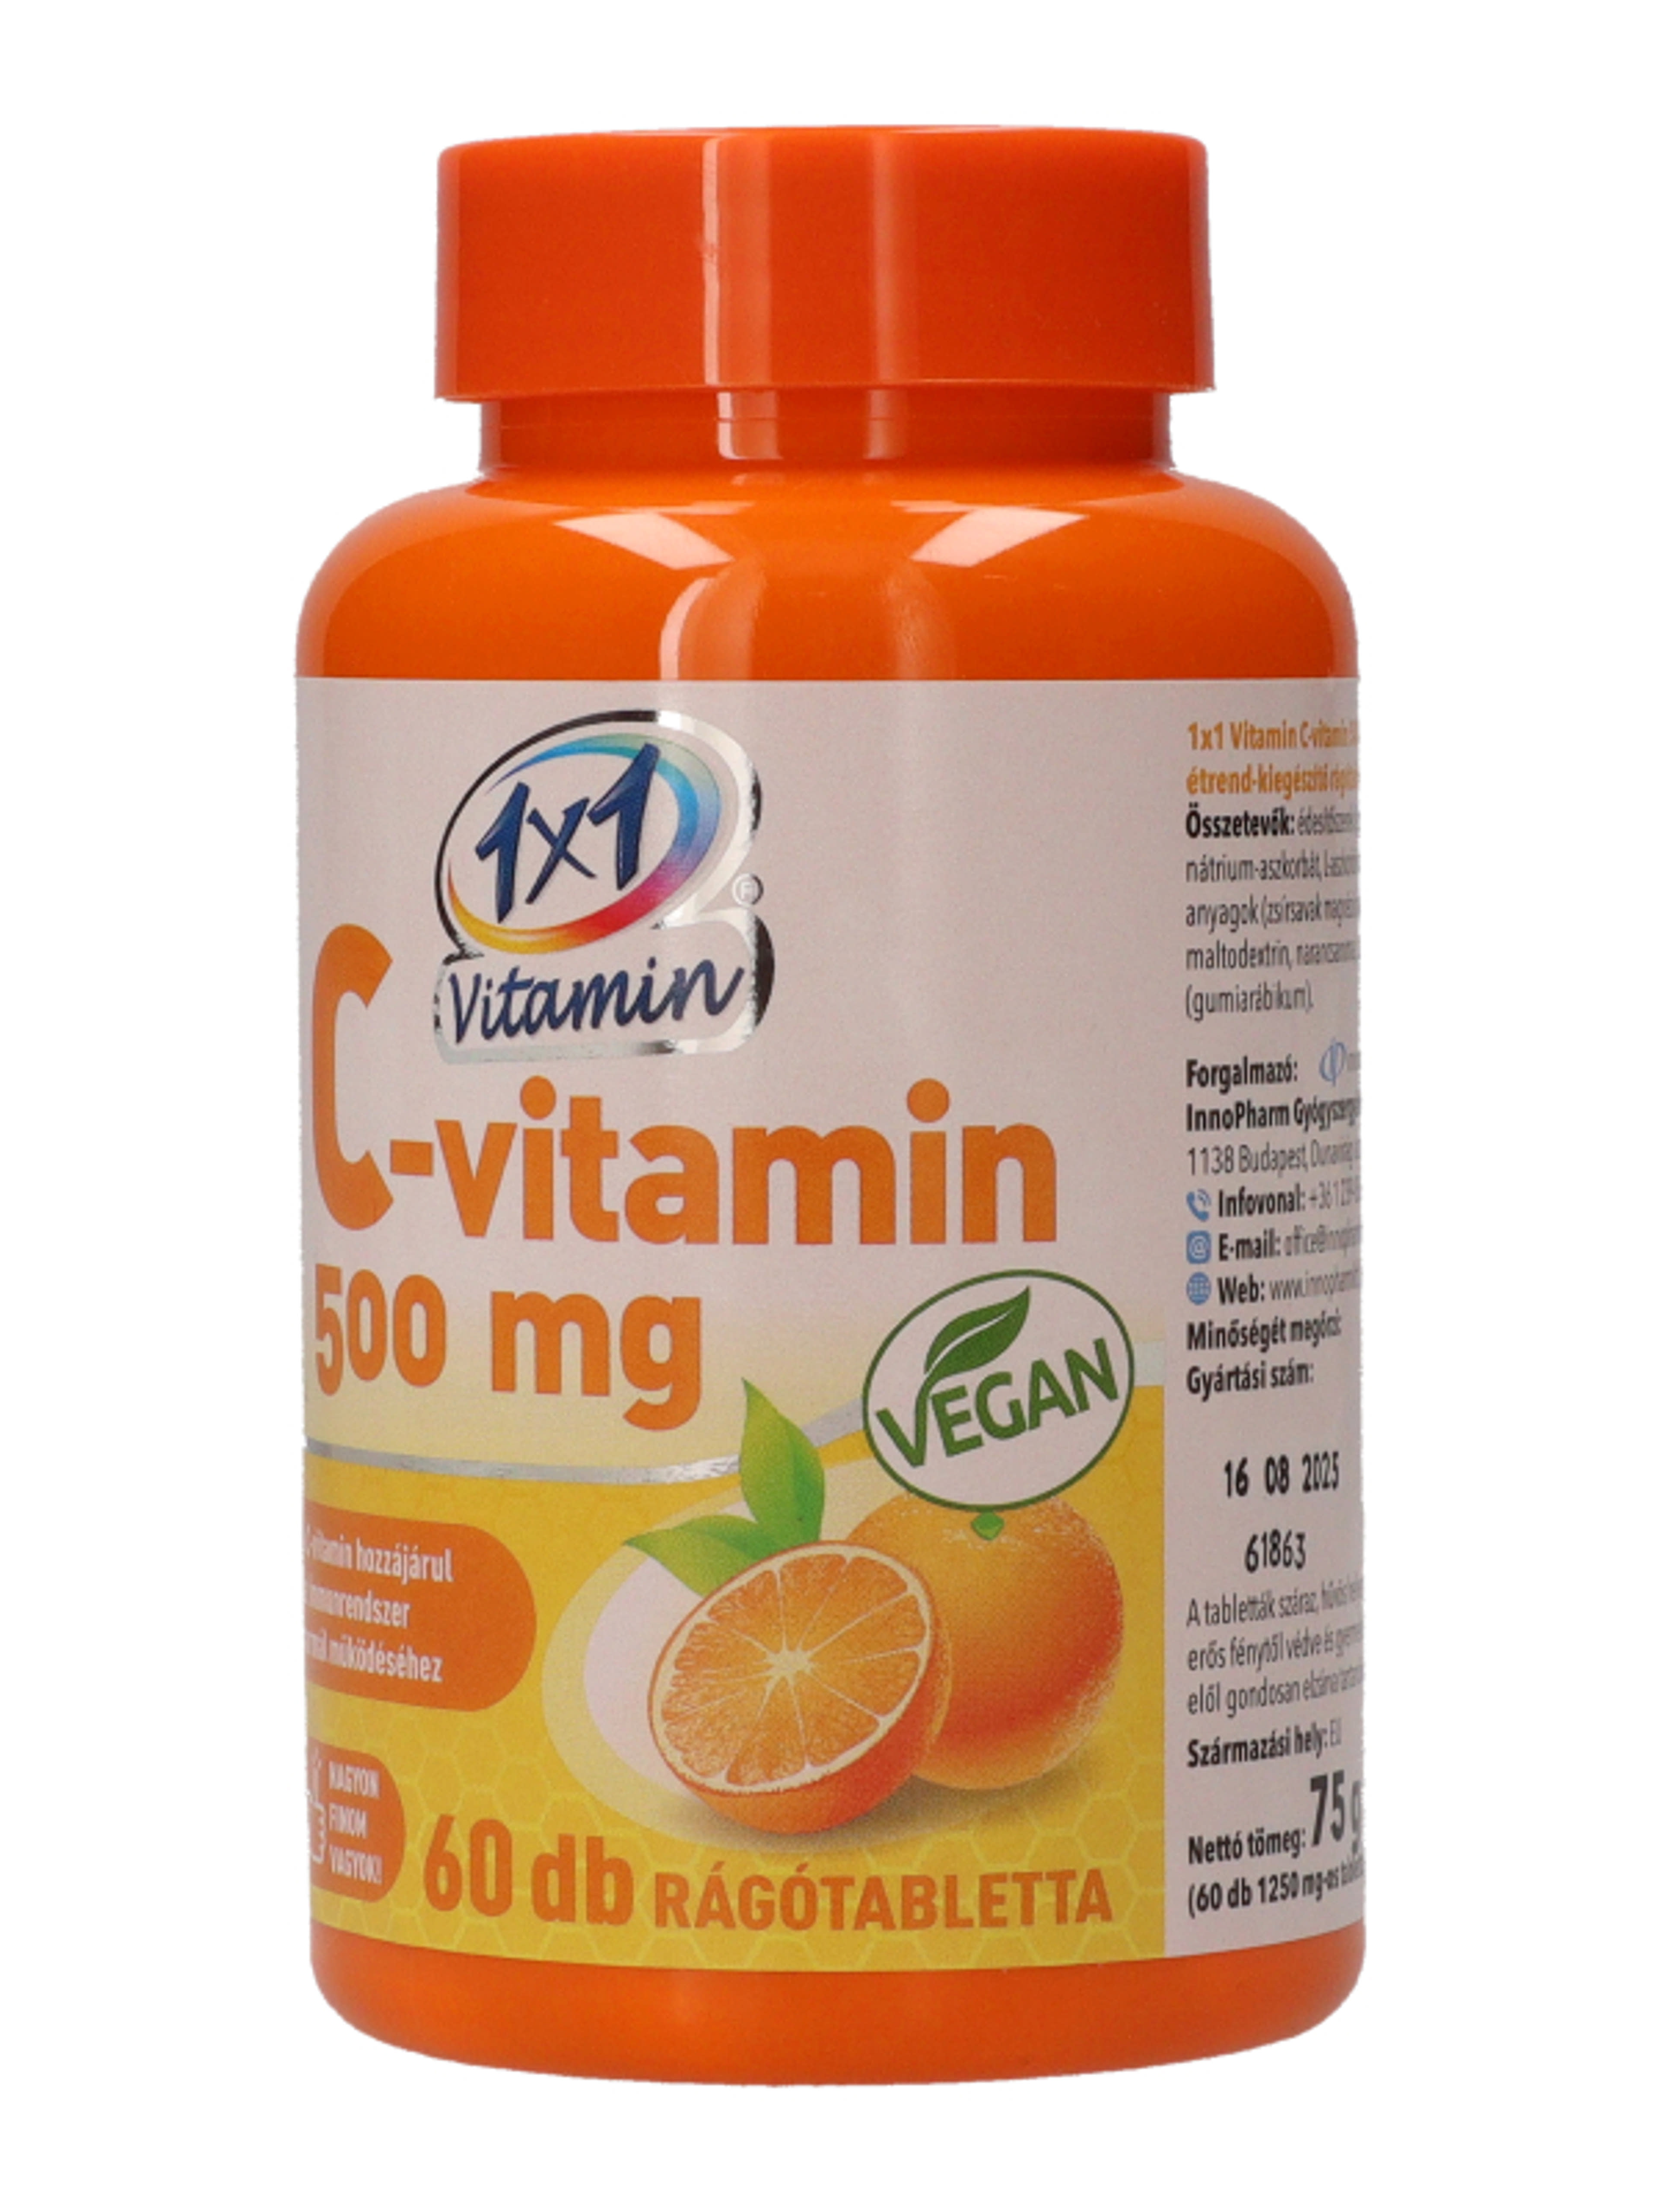 1x1 Vitamin C-Vitamin 500mg rágótabletta - 60 db-3